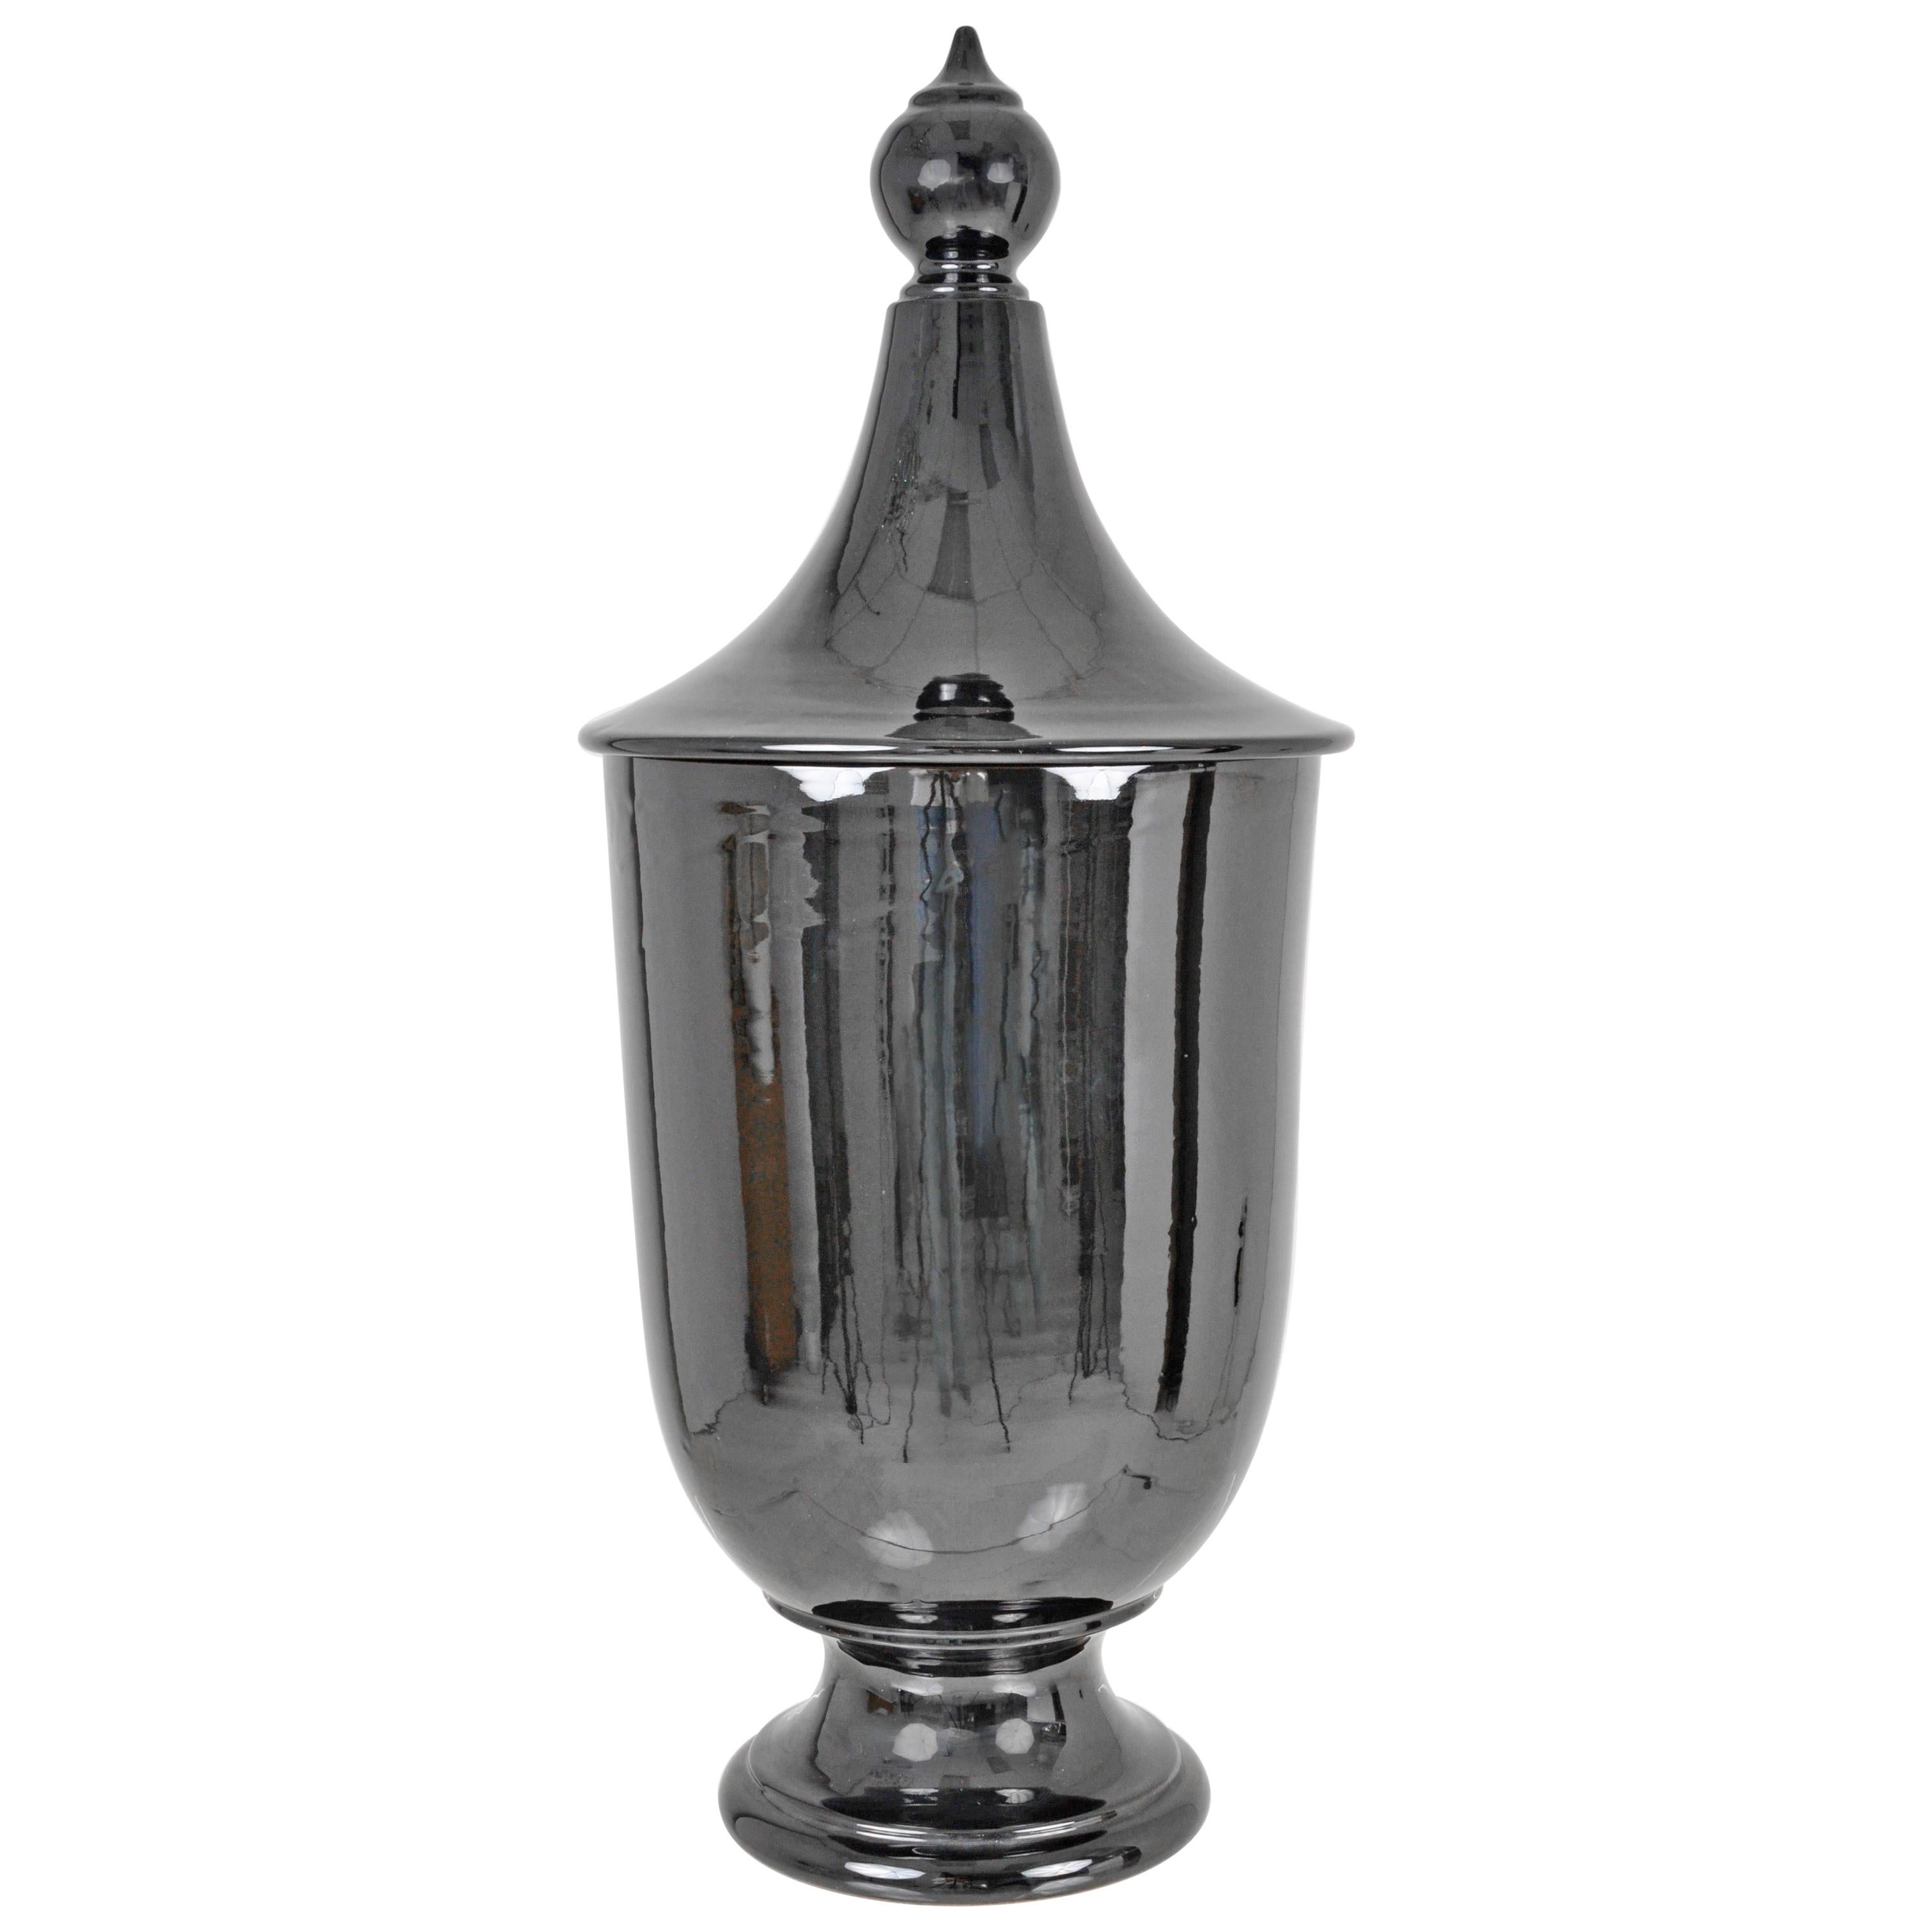 Glazed Italian Lidded Urn, Large Size